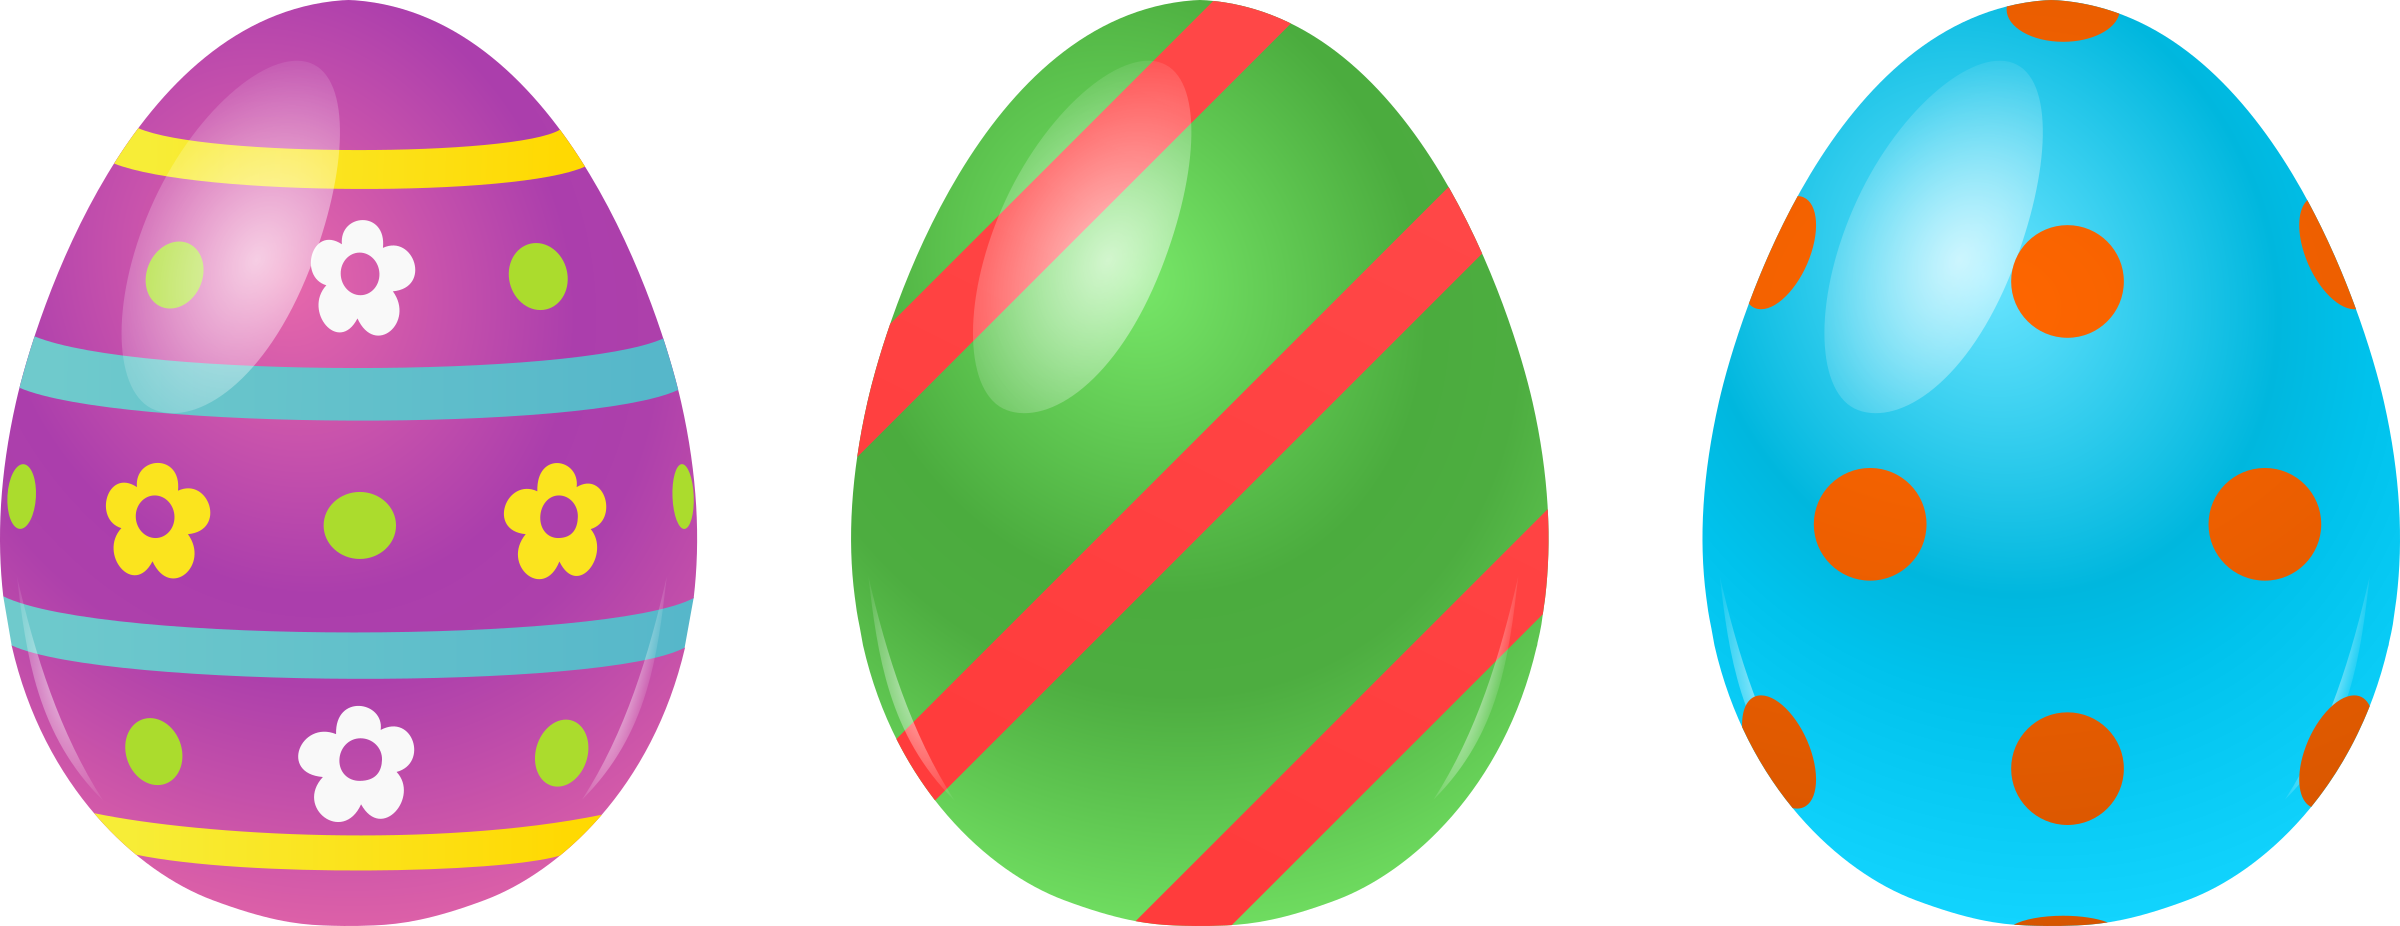 ไข่อีสเตอร์สีสันดาวน์โหลด PNG Image